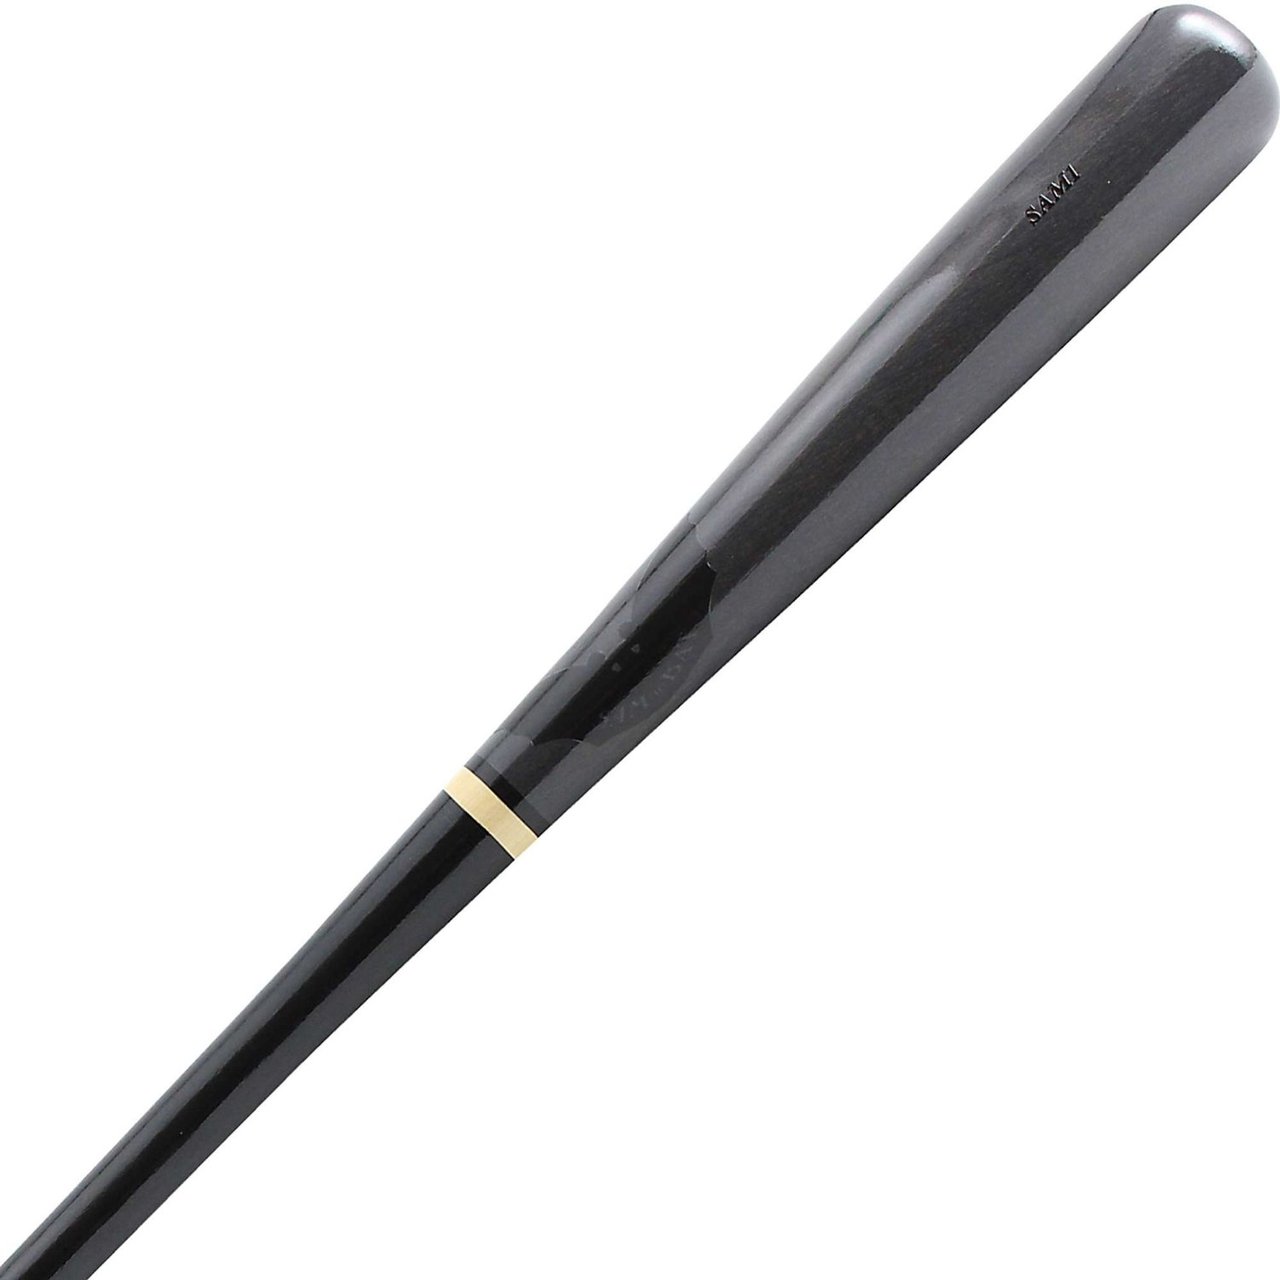 sam-bat-sam1-hardwood-maple-wood-baseball-bat-black-gray-34-inch SAM1-BKGY-34-INCH  B00PC1RJ8S           